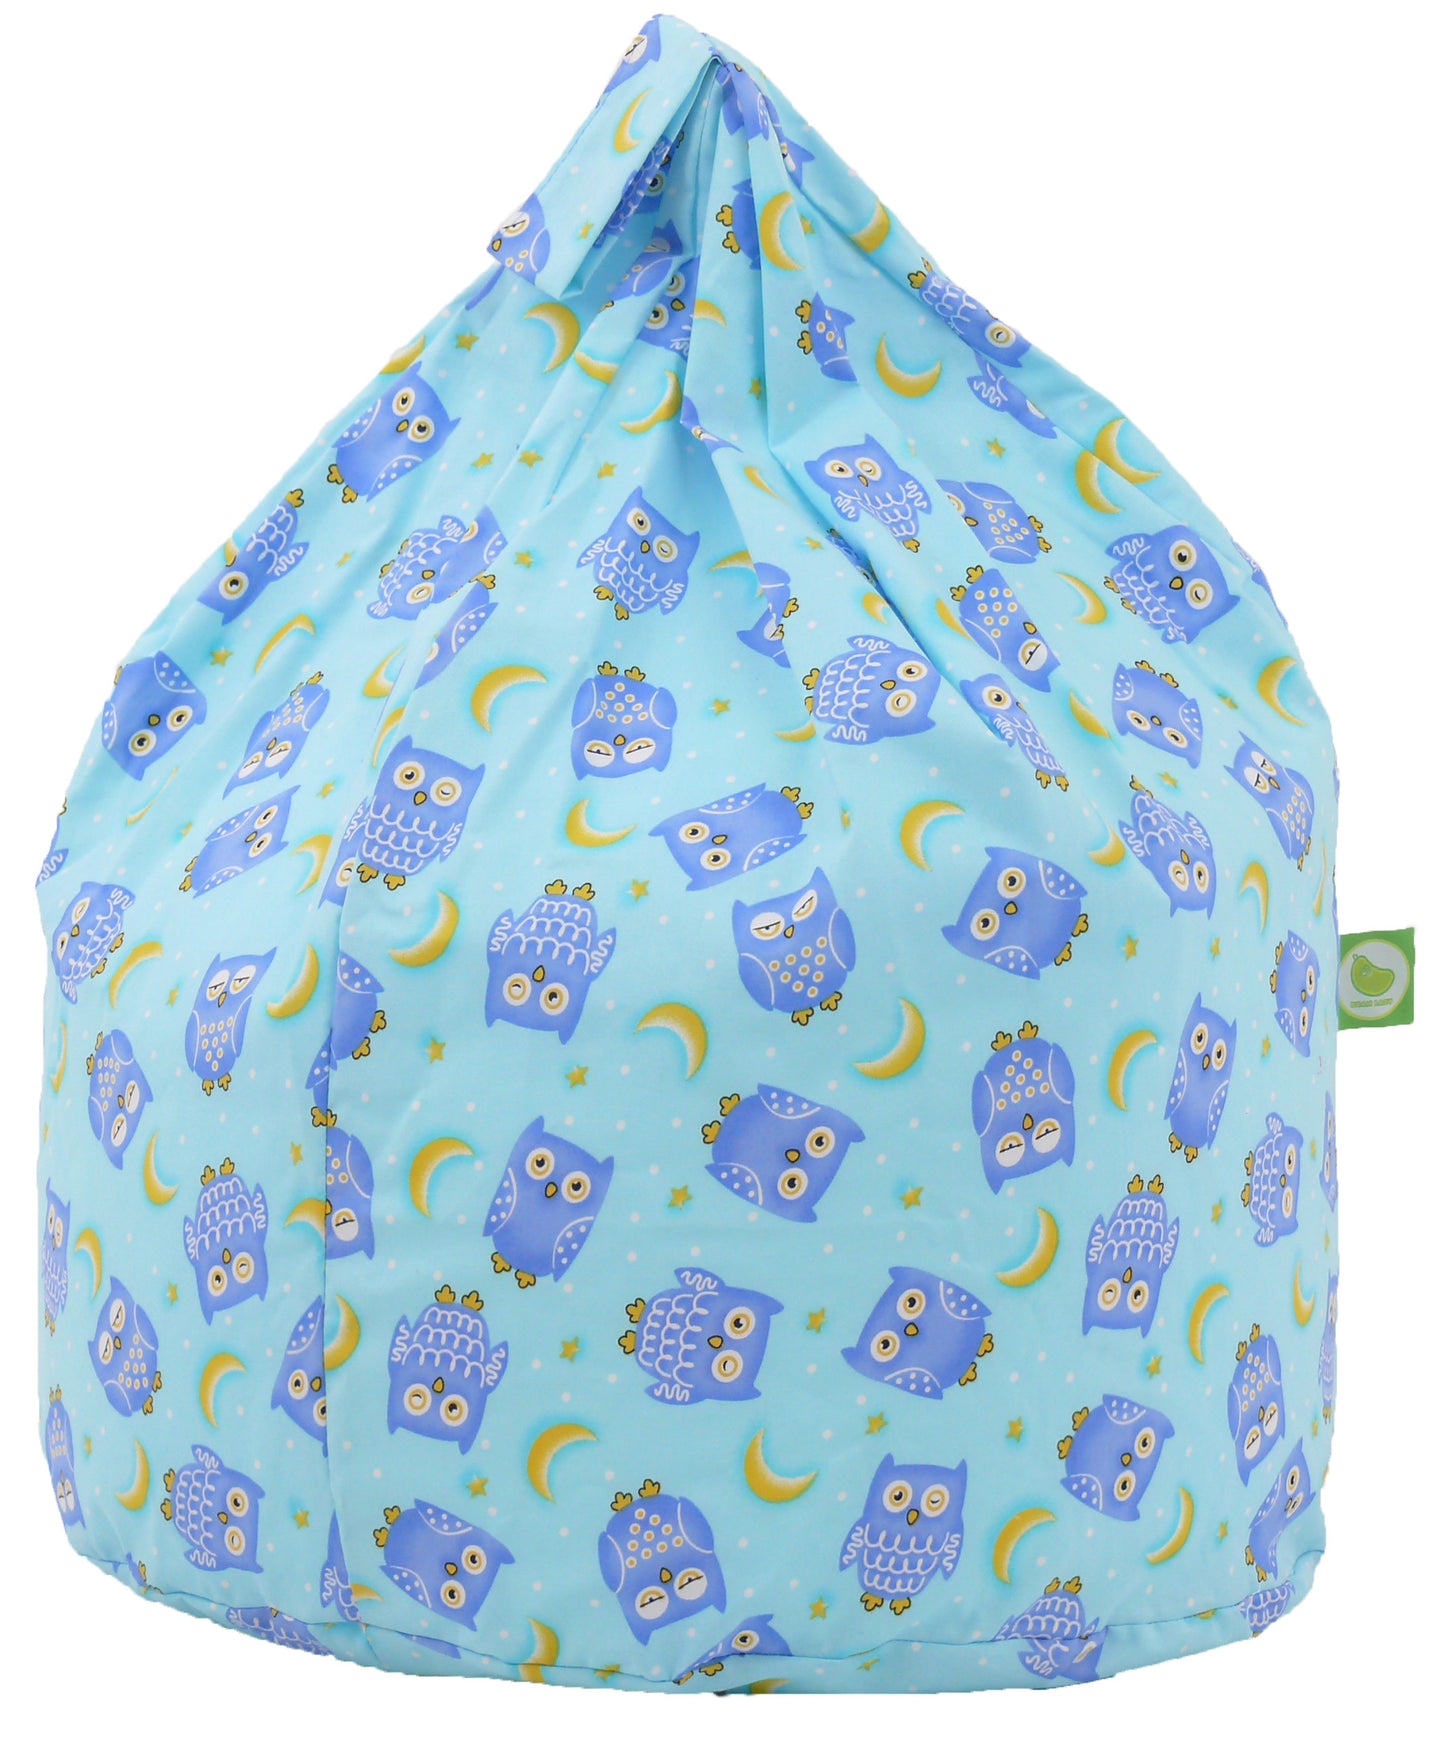 Cotton Blue Owl Bean Bag Large Size